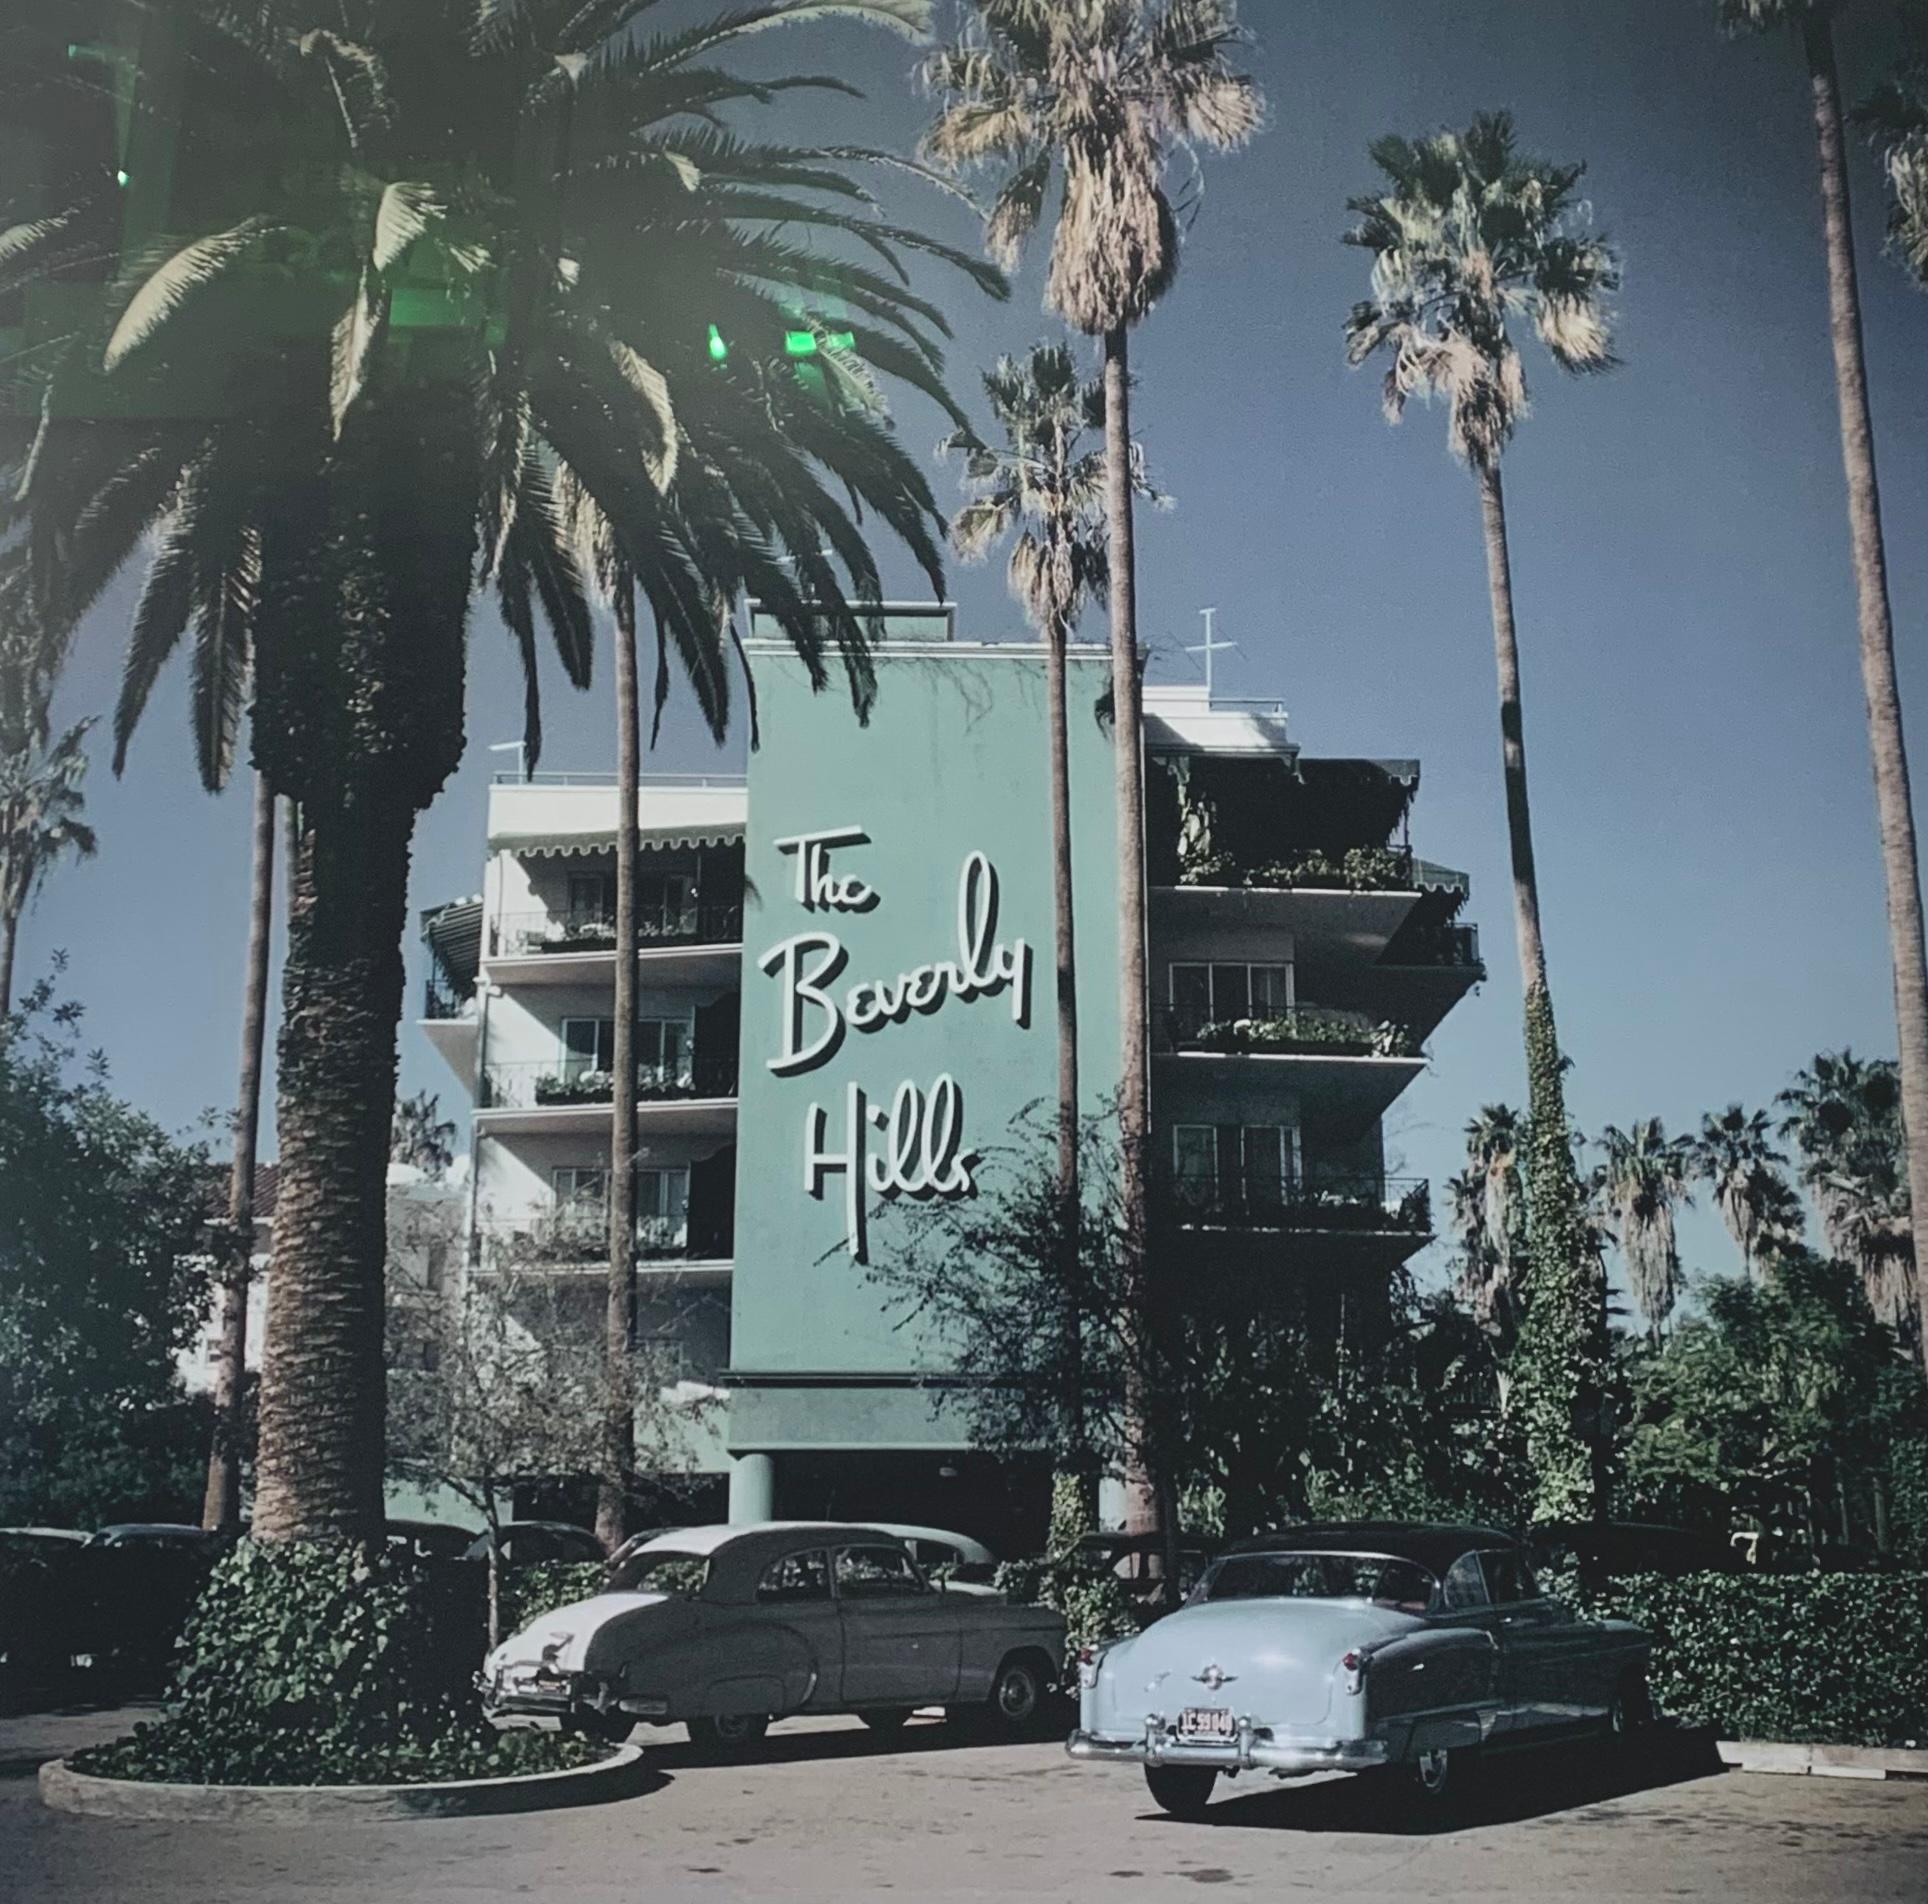 "Beverly Hills Hotel" par Slim Aarons 

Voitures garées devant l'hôtel Beverly Hills sur Sunset Boulevard en Californie, 1957. (Photo par Slim Aarons)

Slim Aarons (né George Allen Aarons ; 29 octobre 1916 - 30 mai 2006) était un photographe